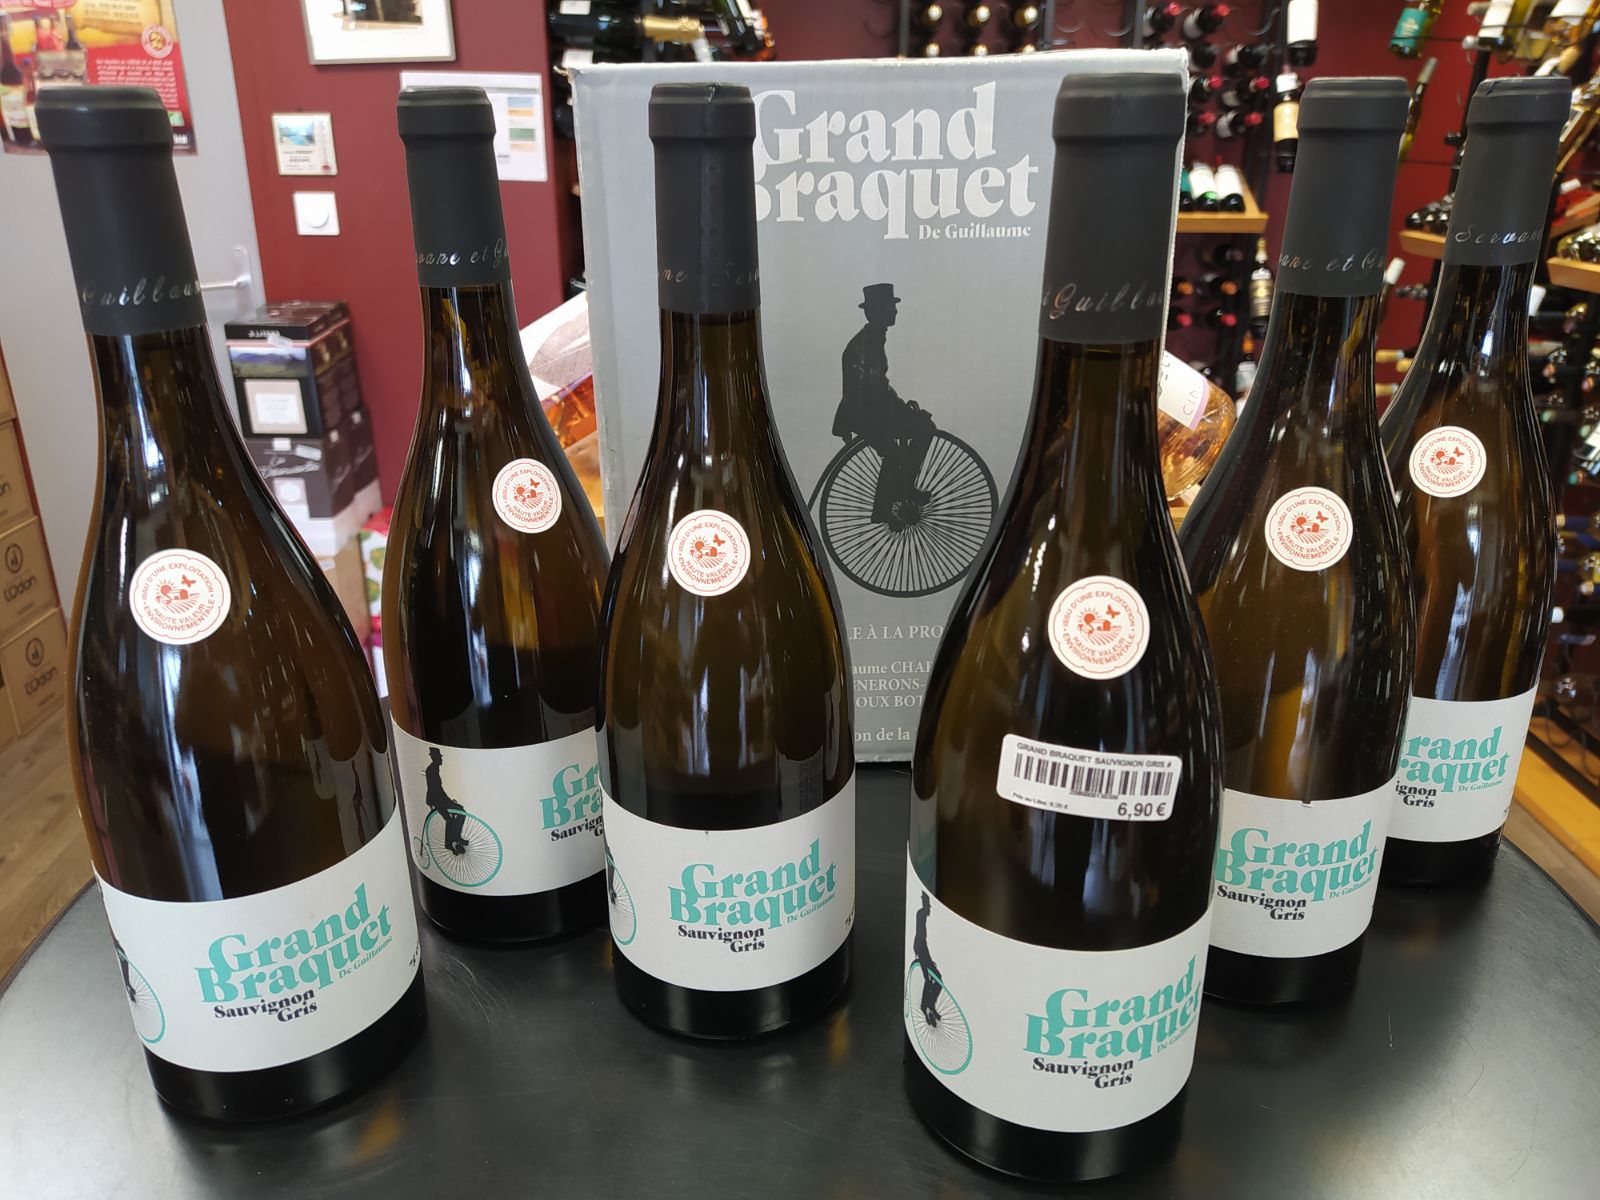 Promo 5 Achetees 1 Offerte Sur Le Vin Grand Braquet Sauvignon Gris